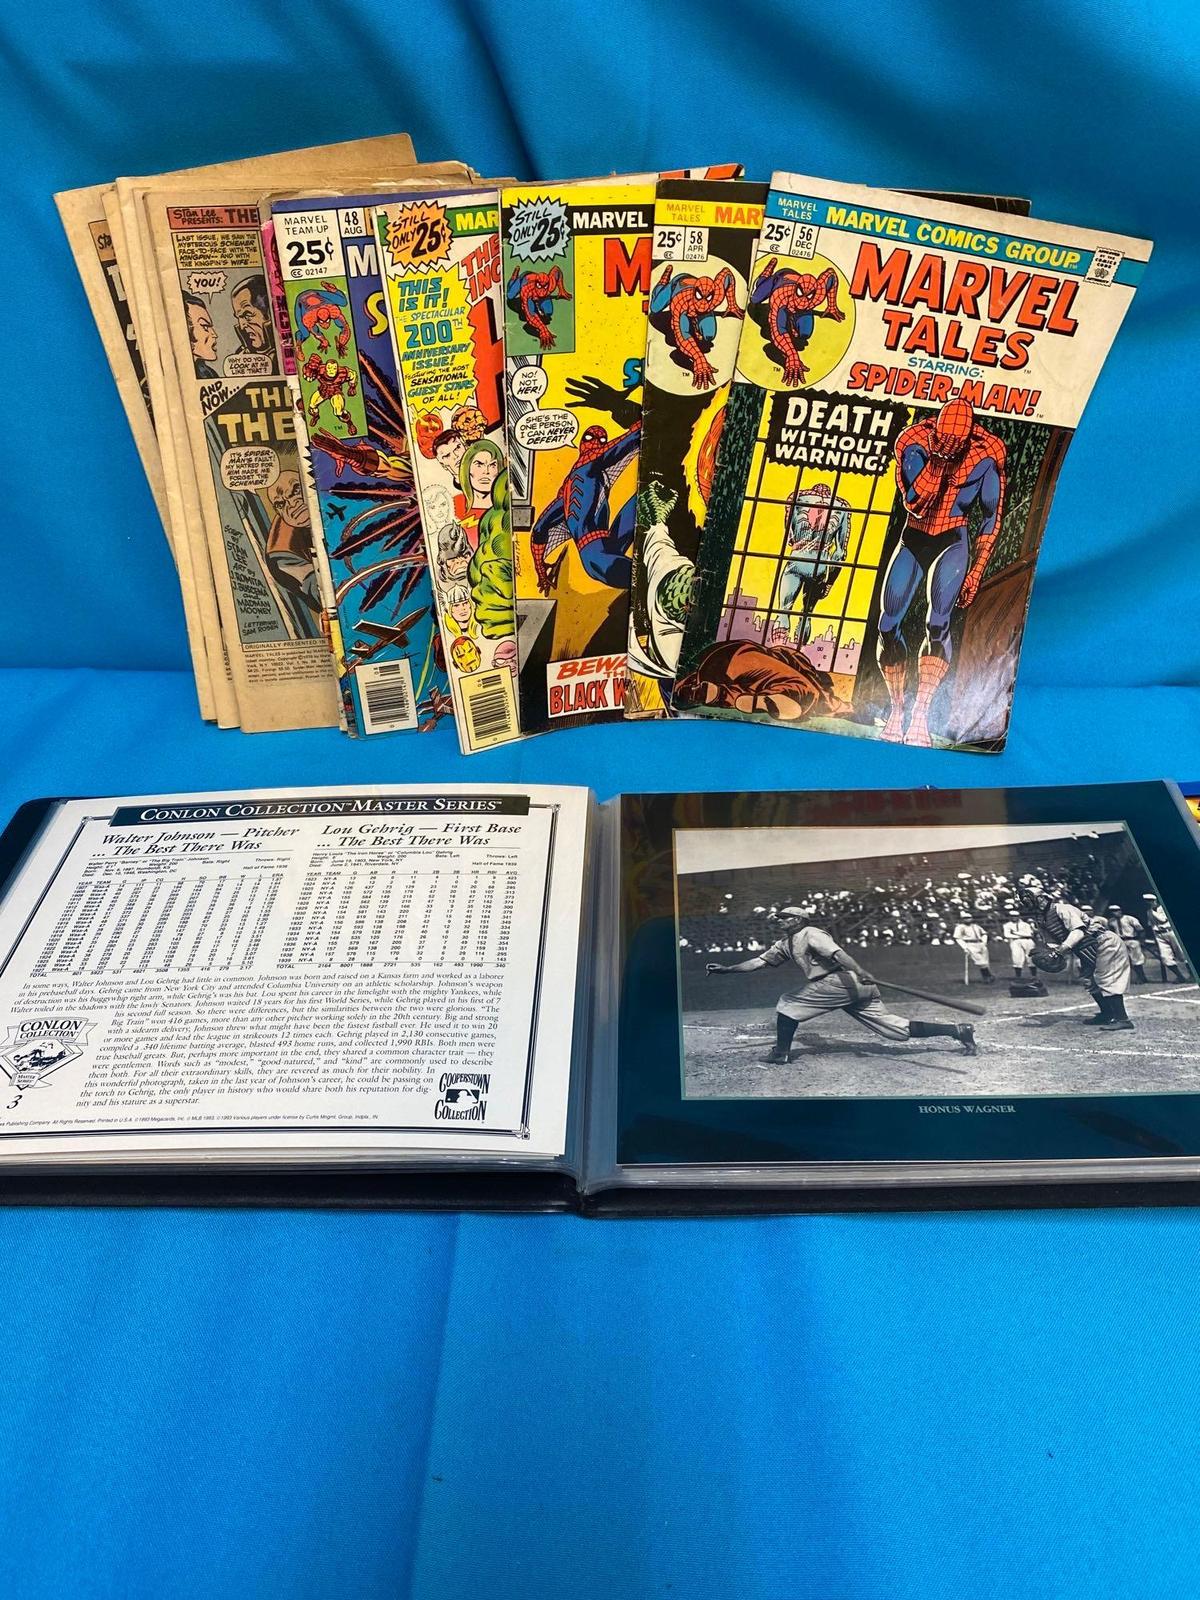 vintage comics Spider Man, Conlon collection pictures